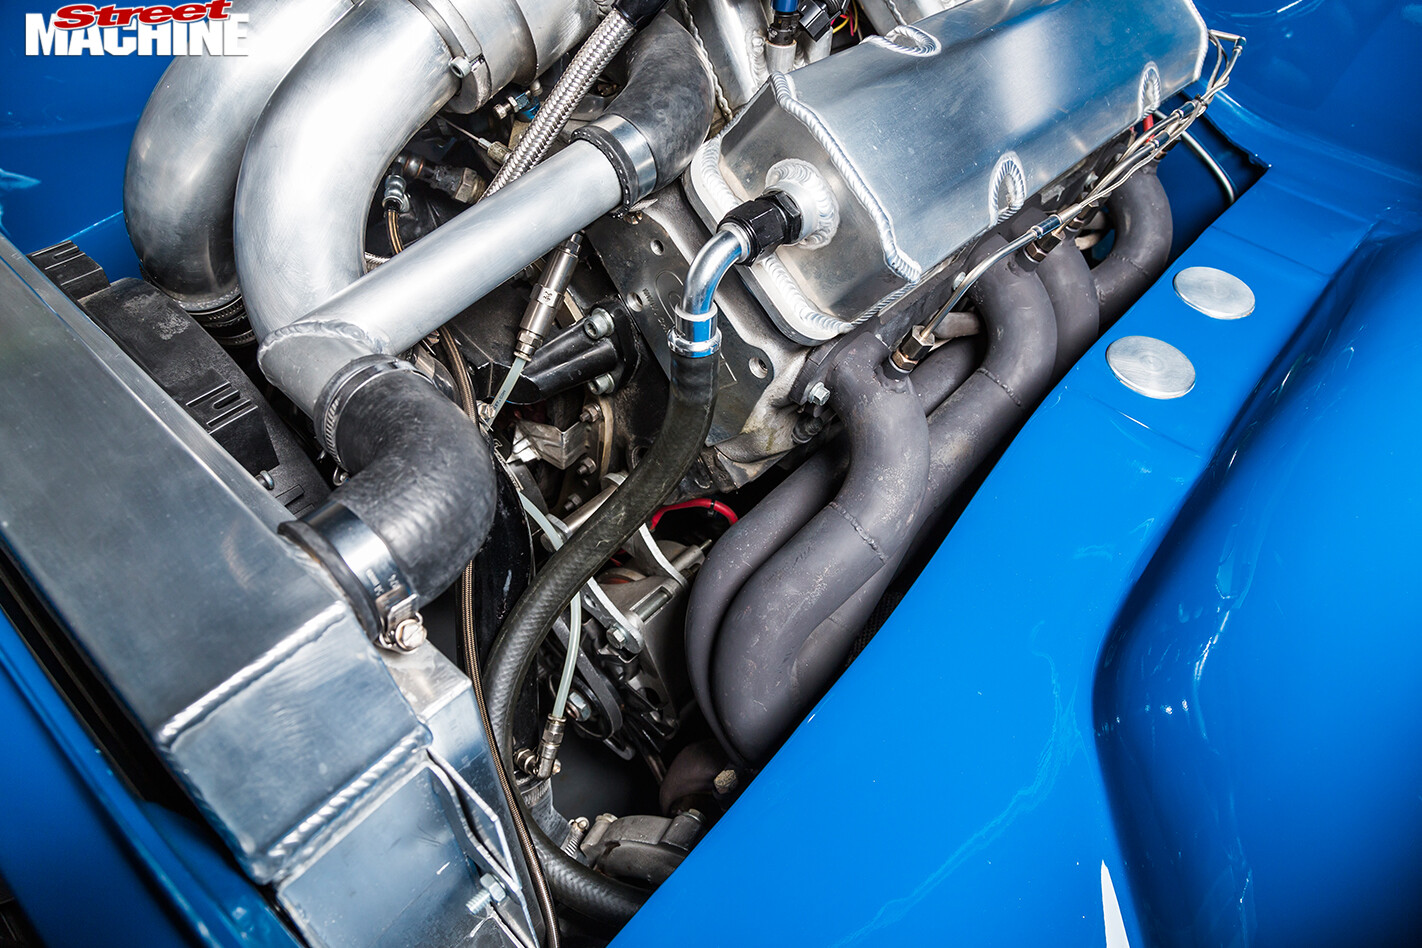 Holden -LH-Torana -engine -detail -2